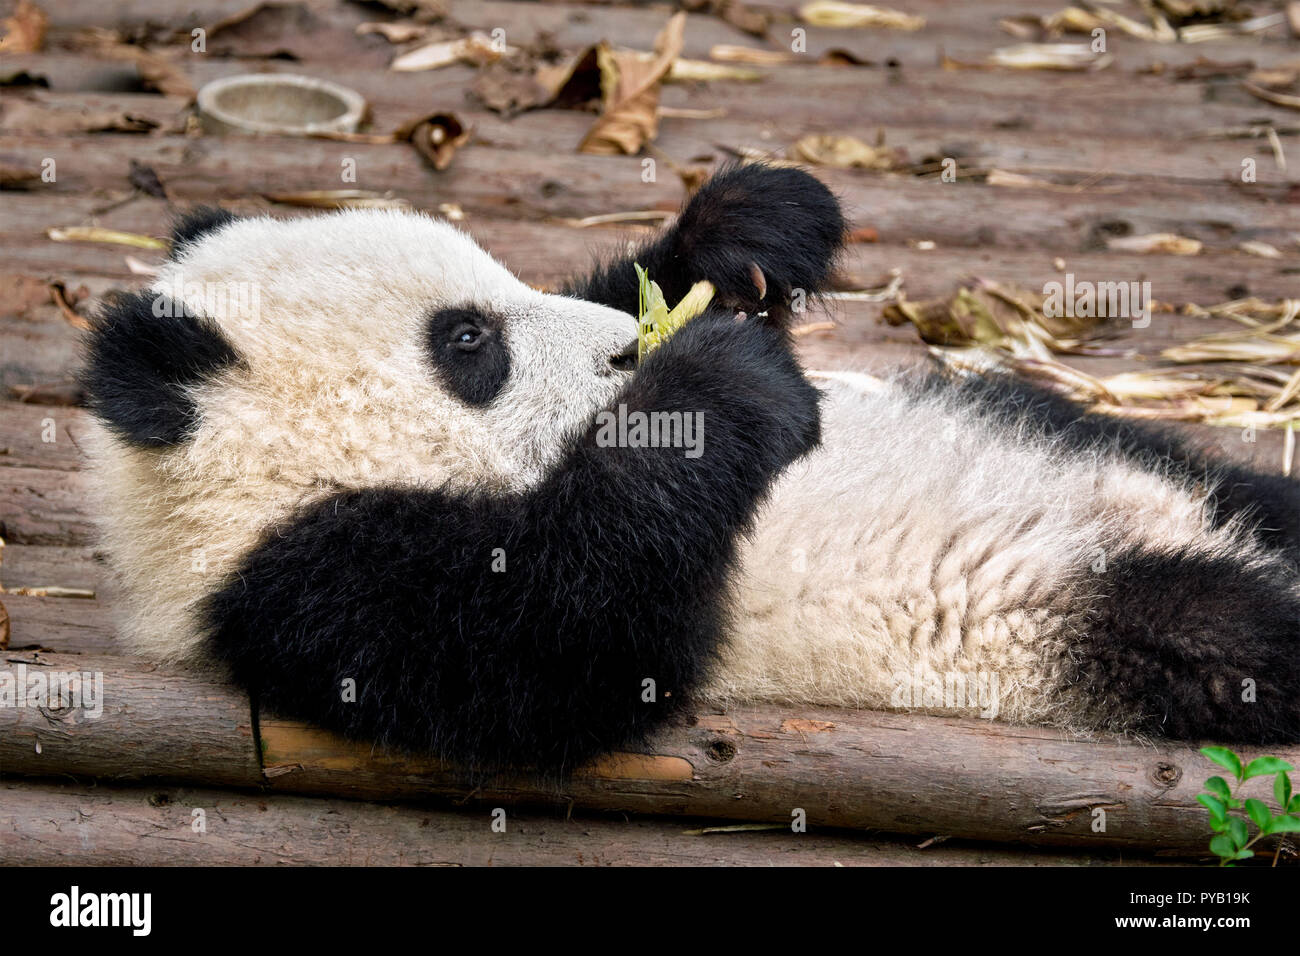 Gigantesco orso panda in Cina Foto Stock